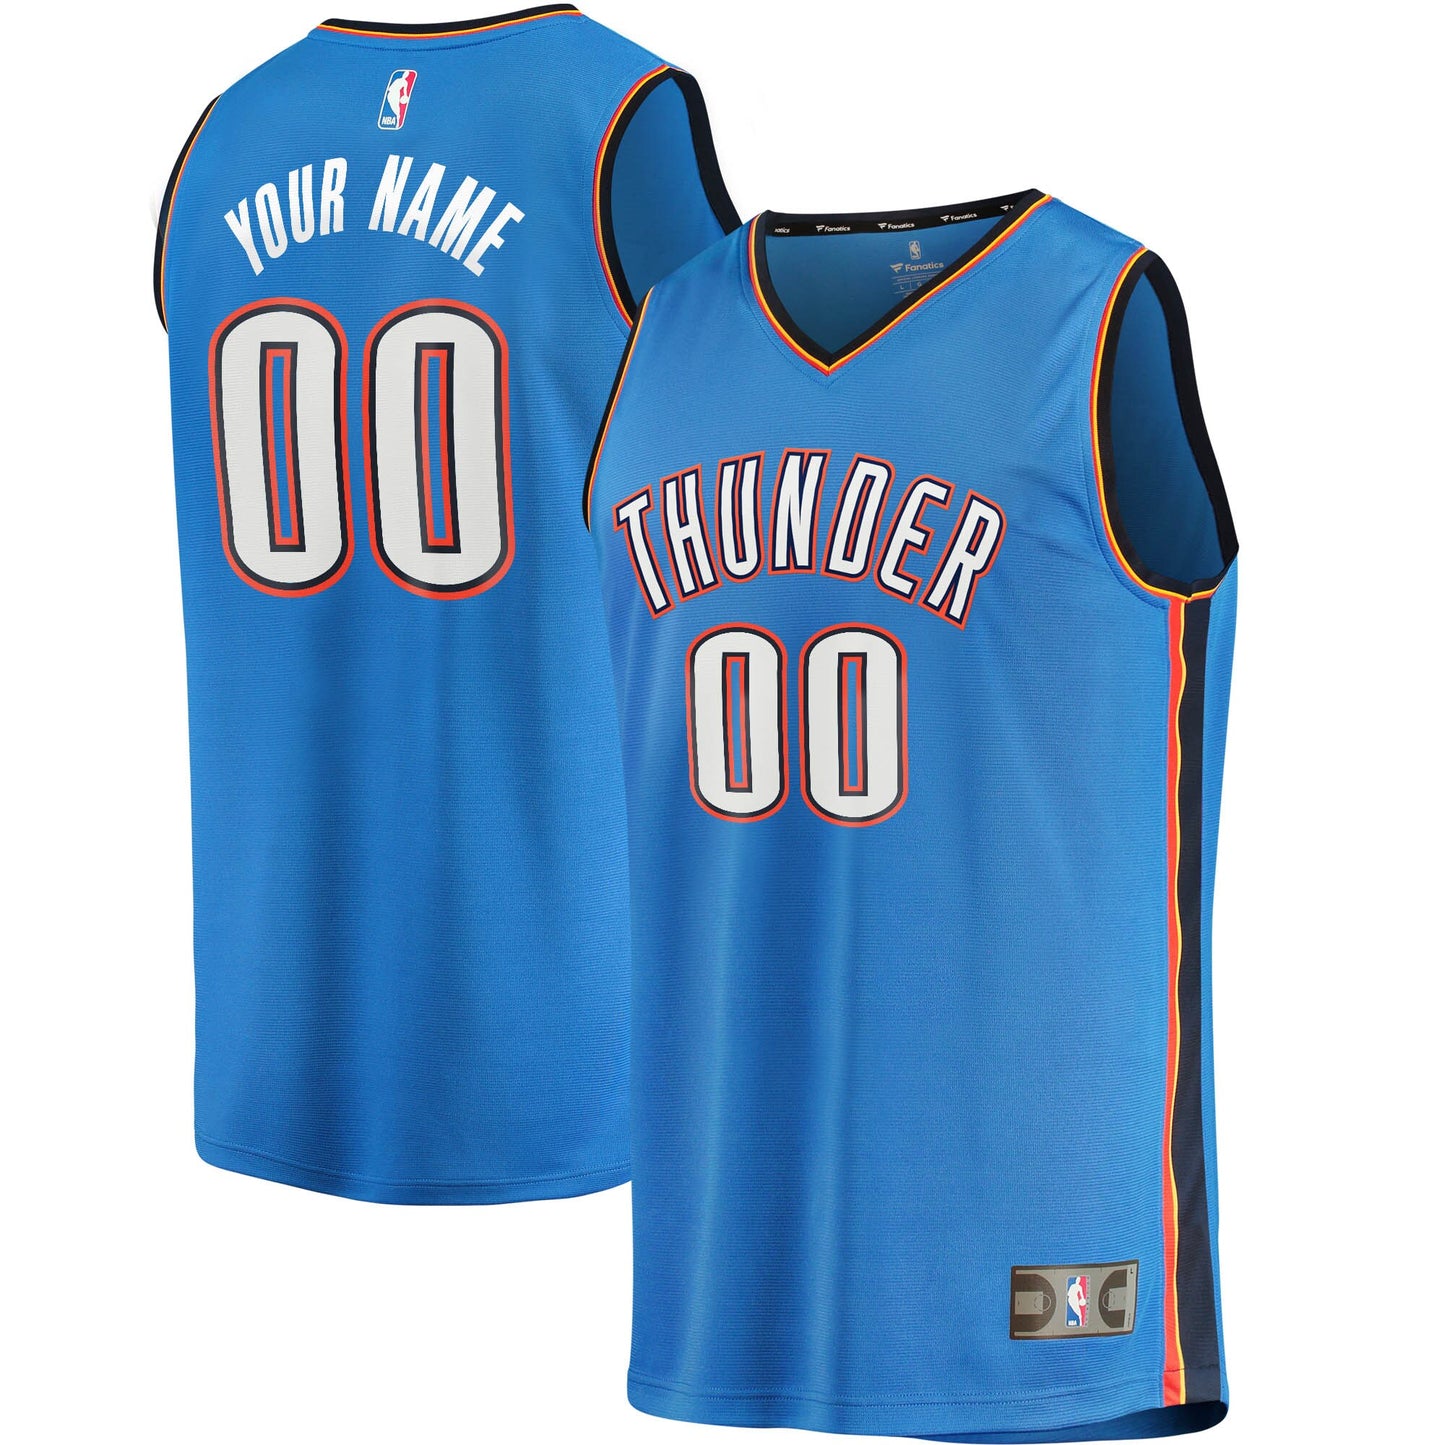 Oklahoma City Thunder Fanatics Branded Youth 2019/20 Fast Break Custom Replica Jersey Blue - Icon Edition